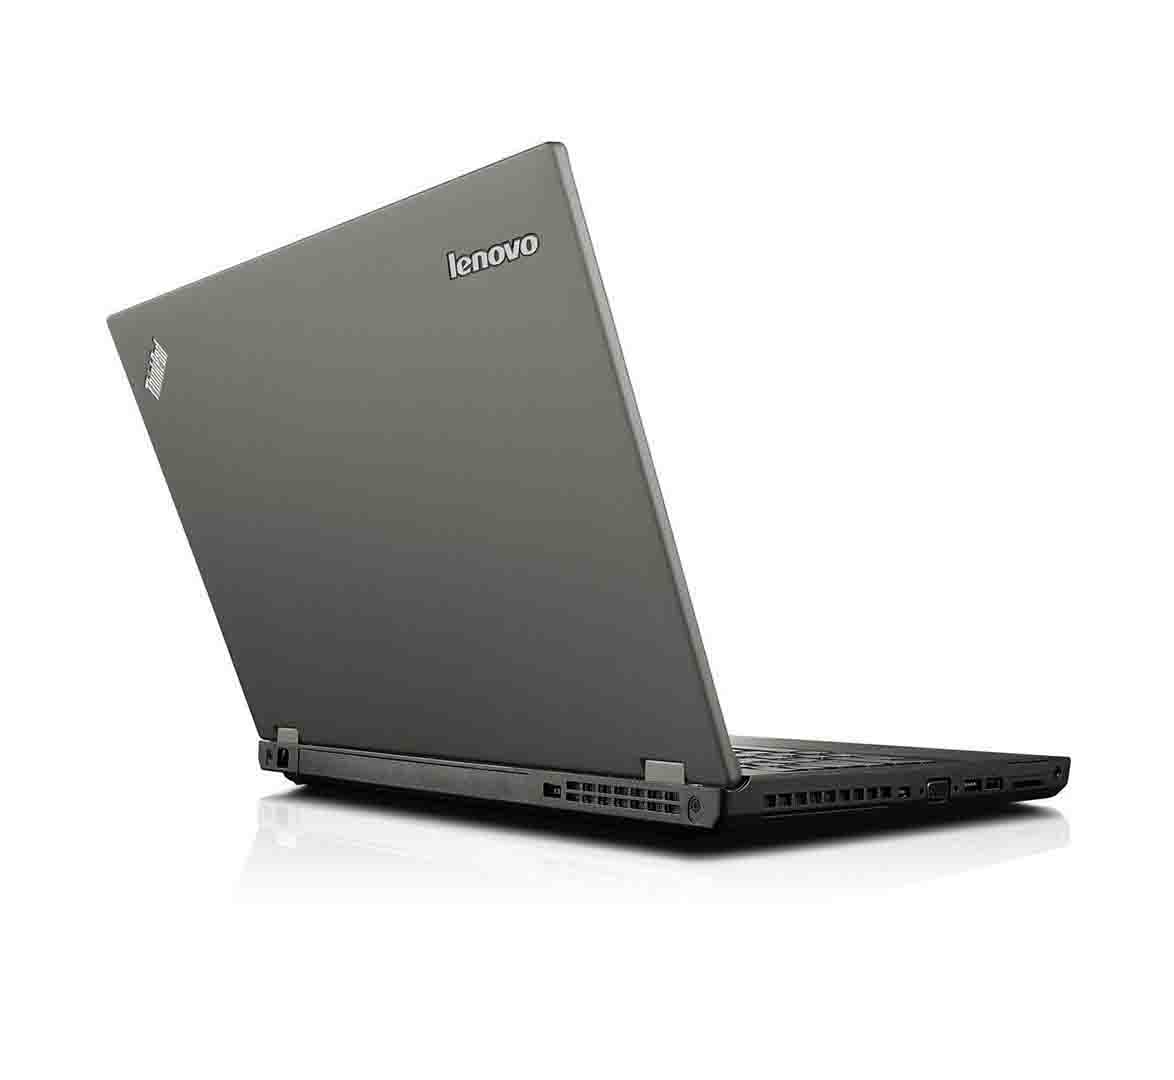 Lenovo ThinkPad W540 Intel® Core™ i7-4800MQ Mobile workstation 39.6 cm (15.6") Full HD 8 GB DDR3-SDRAM 256 GB SSD 2GB NVIDIA® Quadro® K1100M Windows 10 Pro